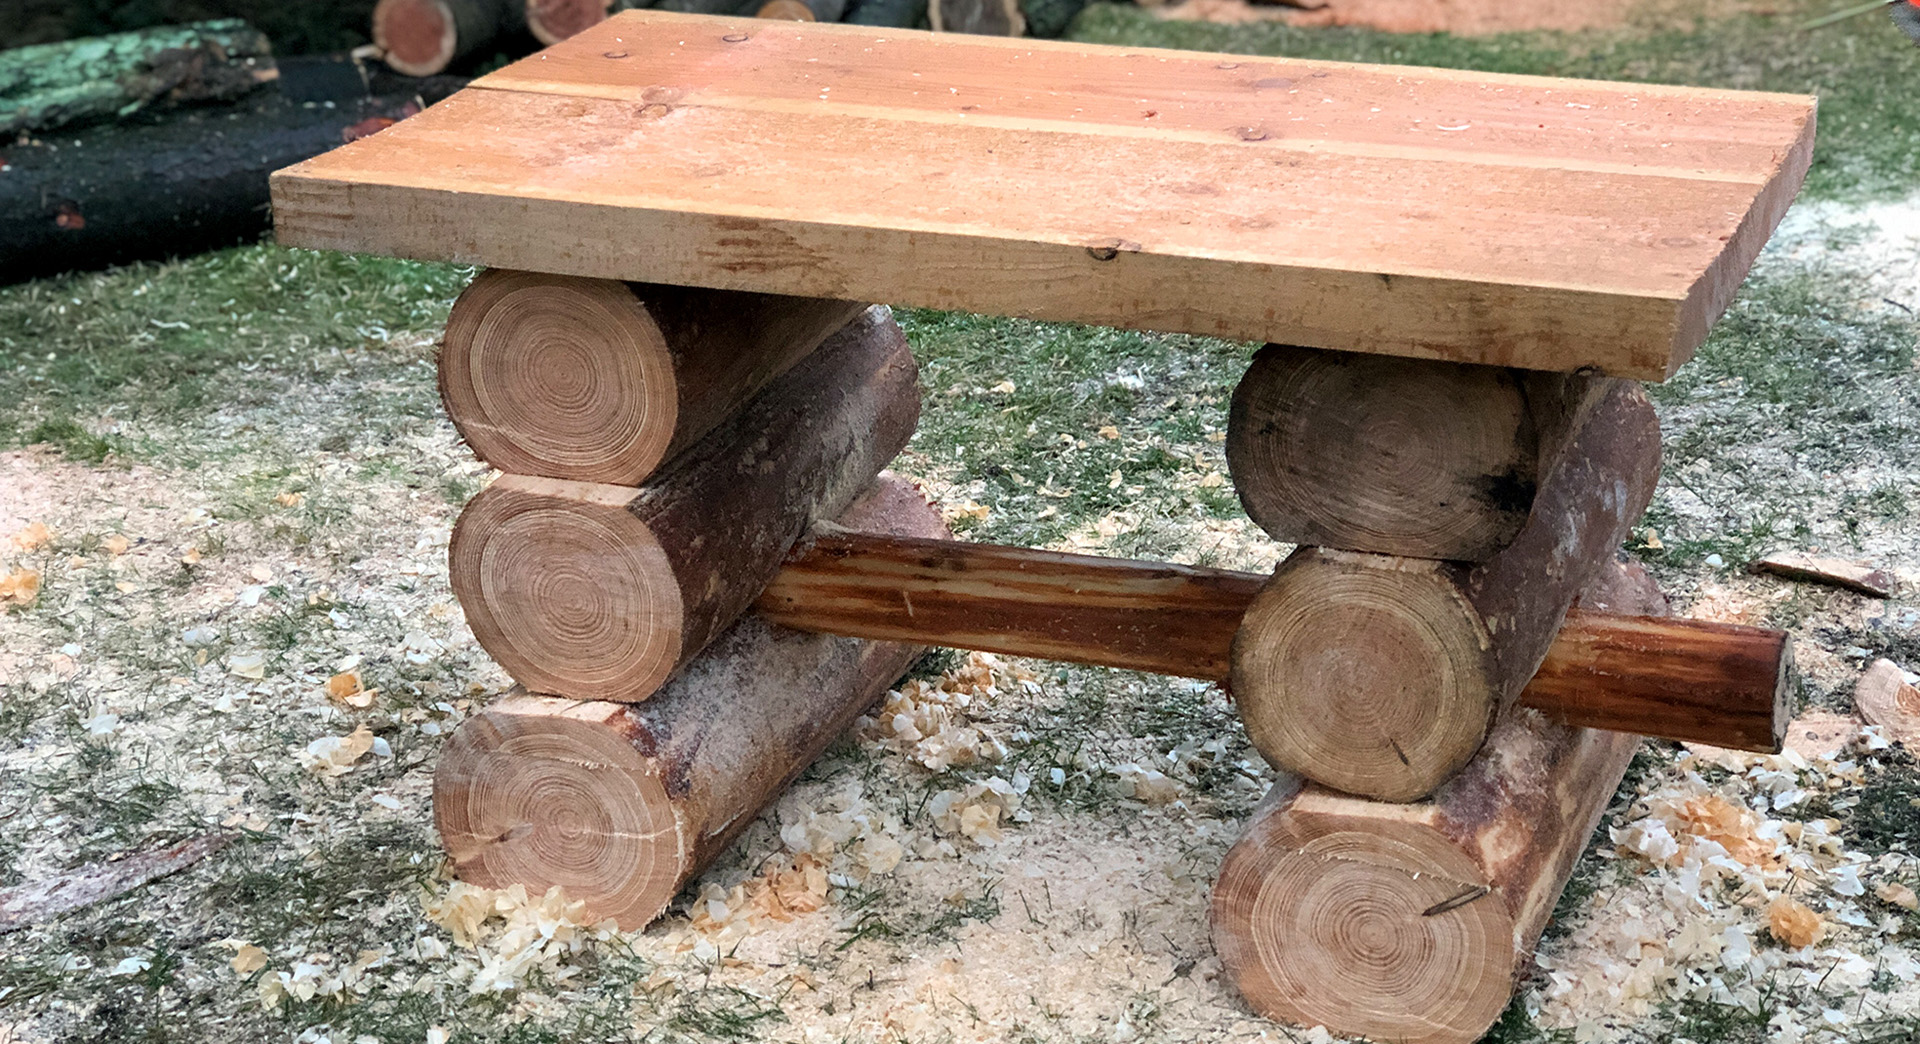 Une table de jardin en bois achevée, sur du gazon, avec de la sciure tout autour